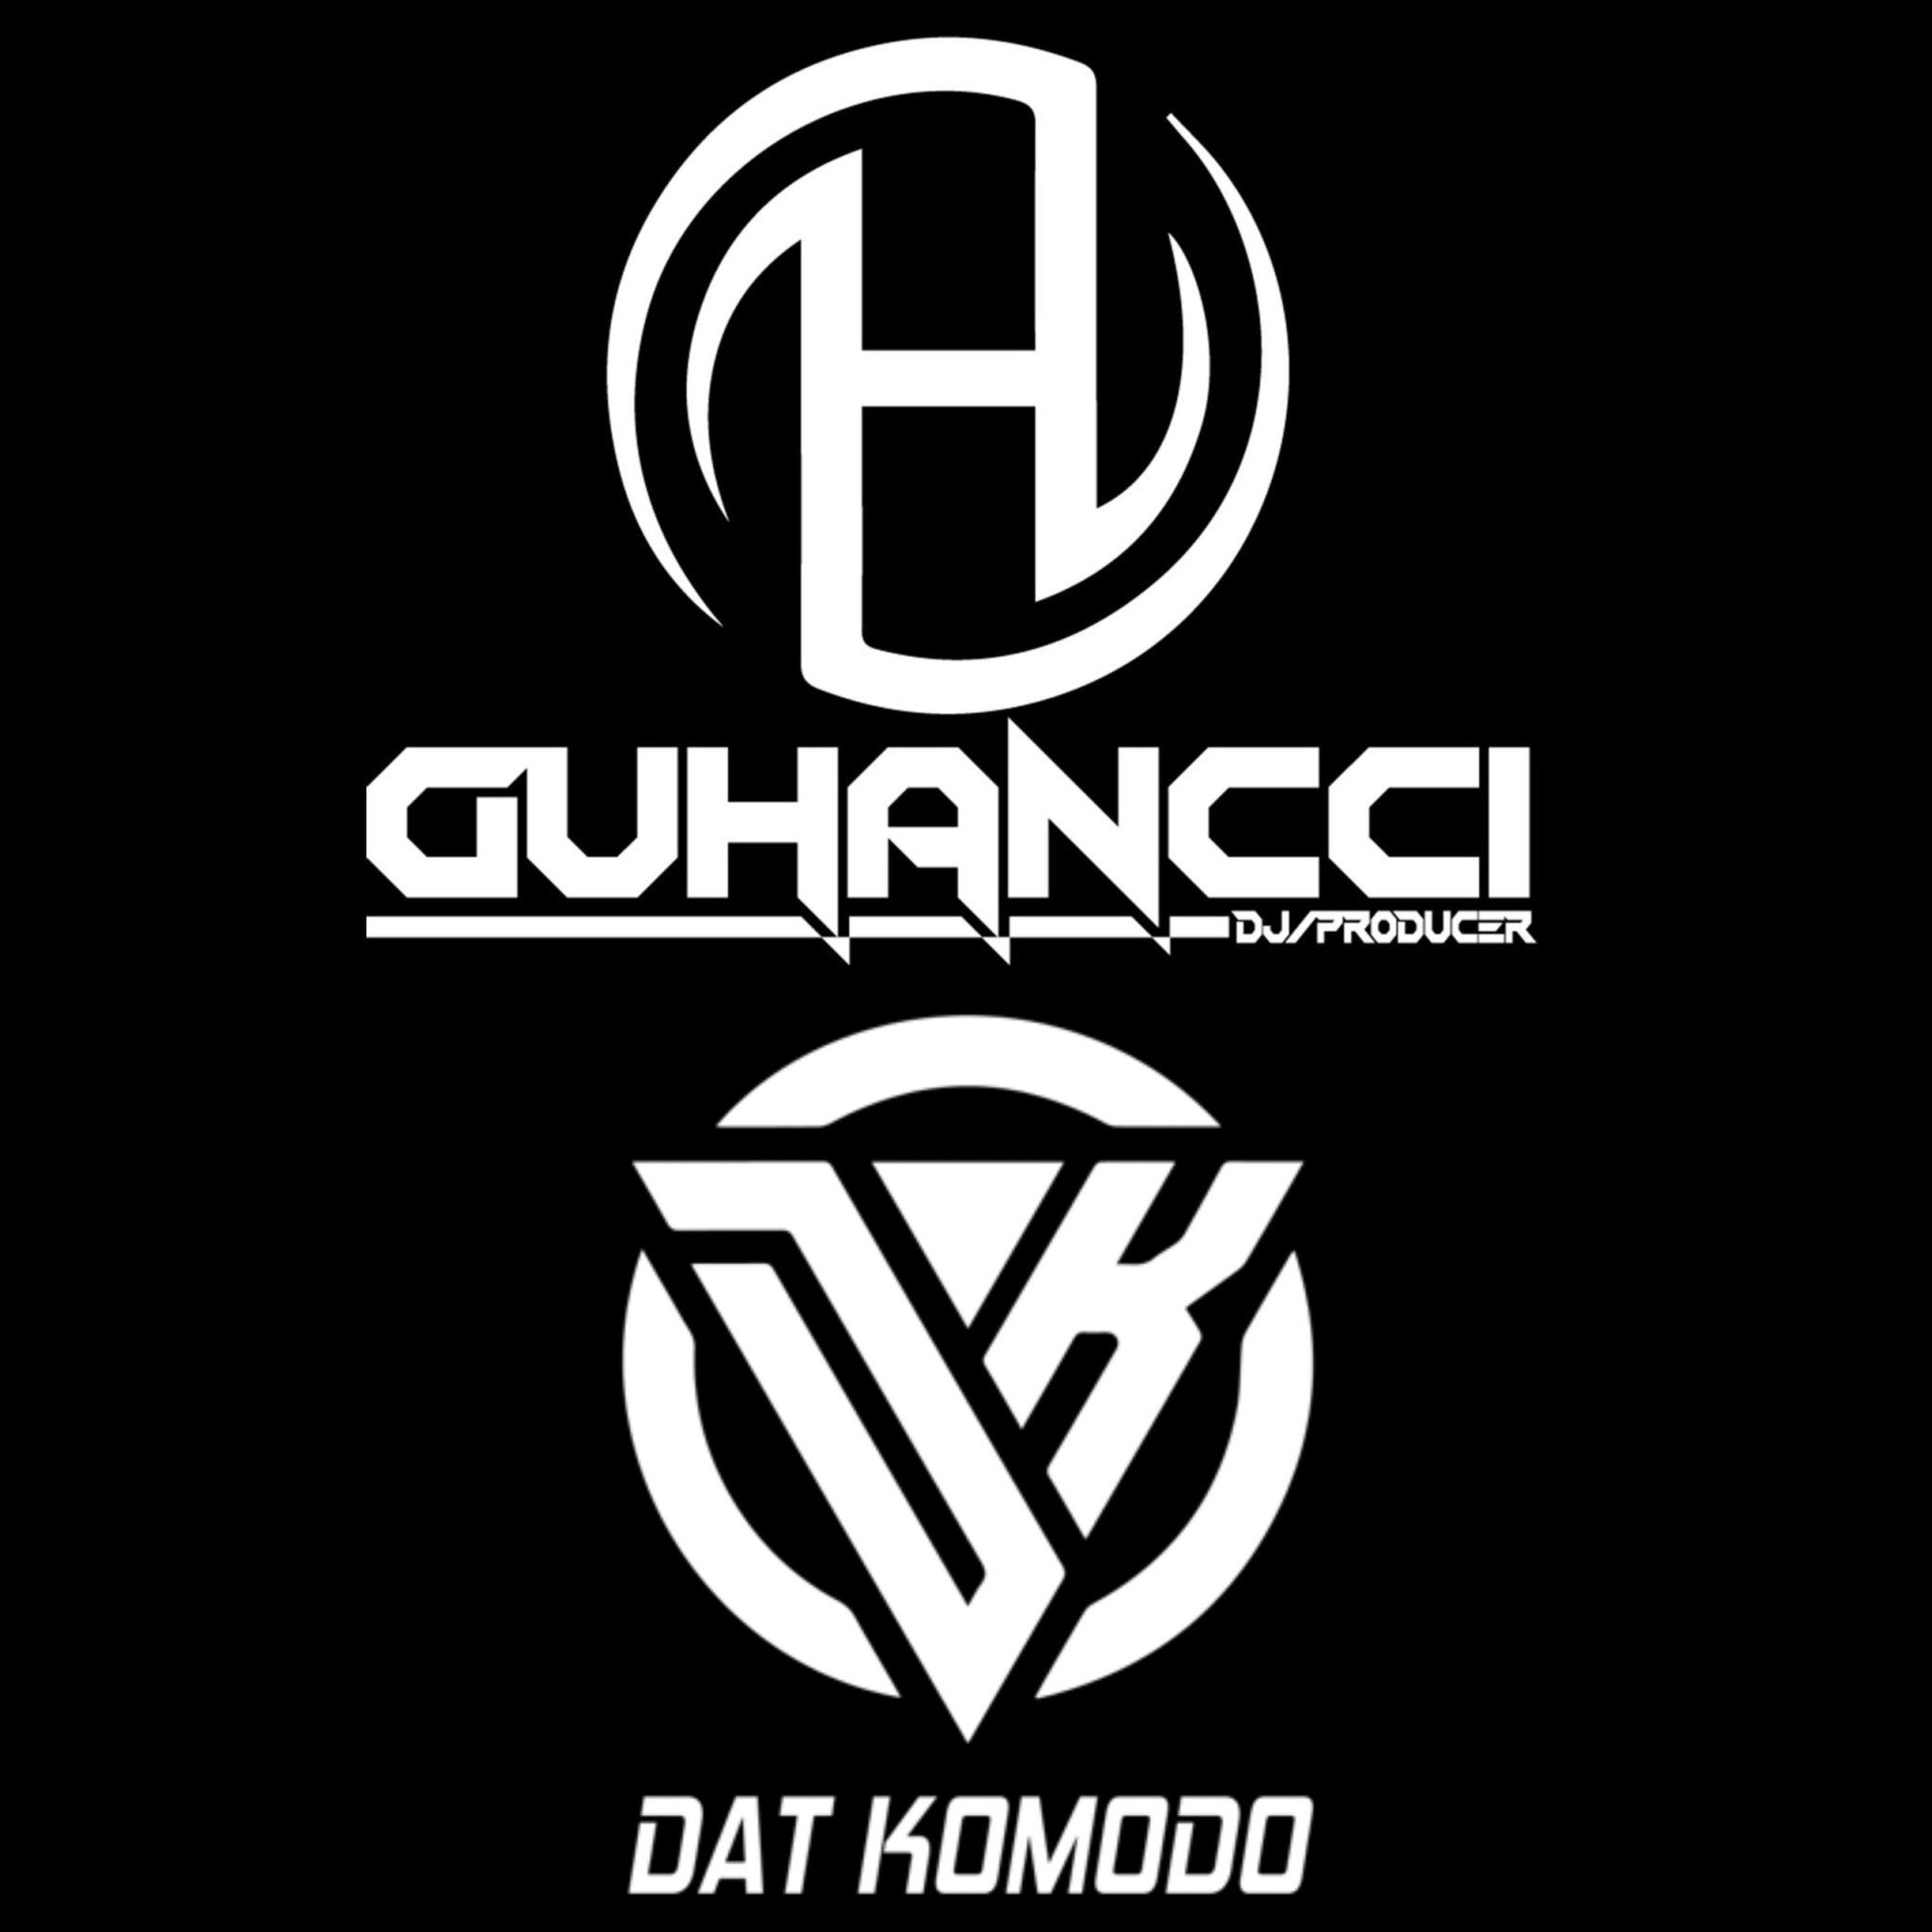 አውርድ Express Music - DatKomodo ft guHancci (guHancci Team)